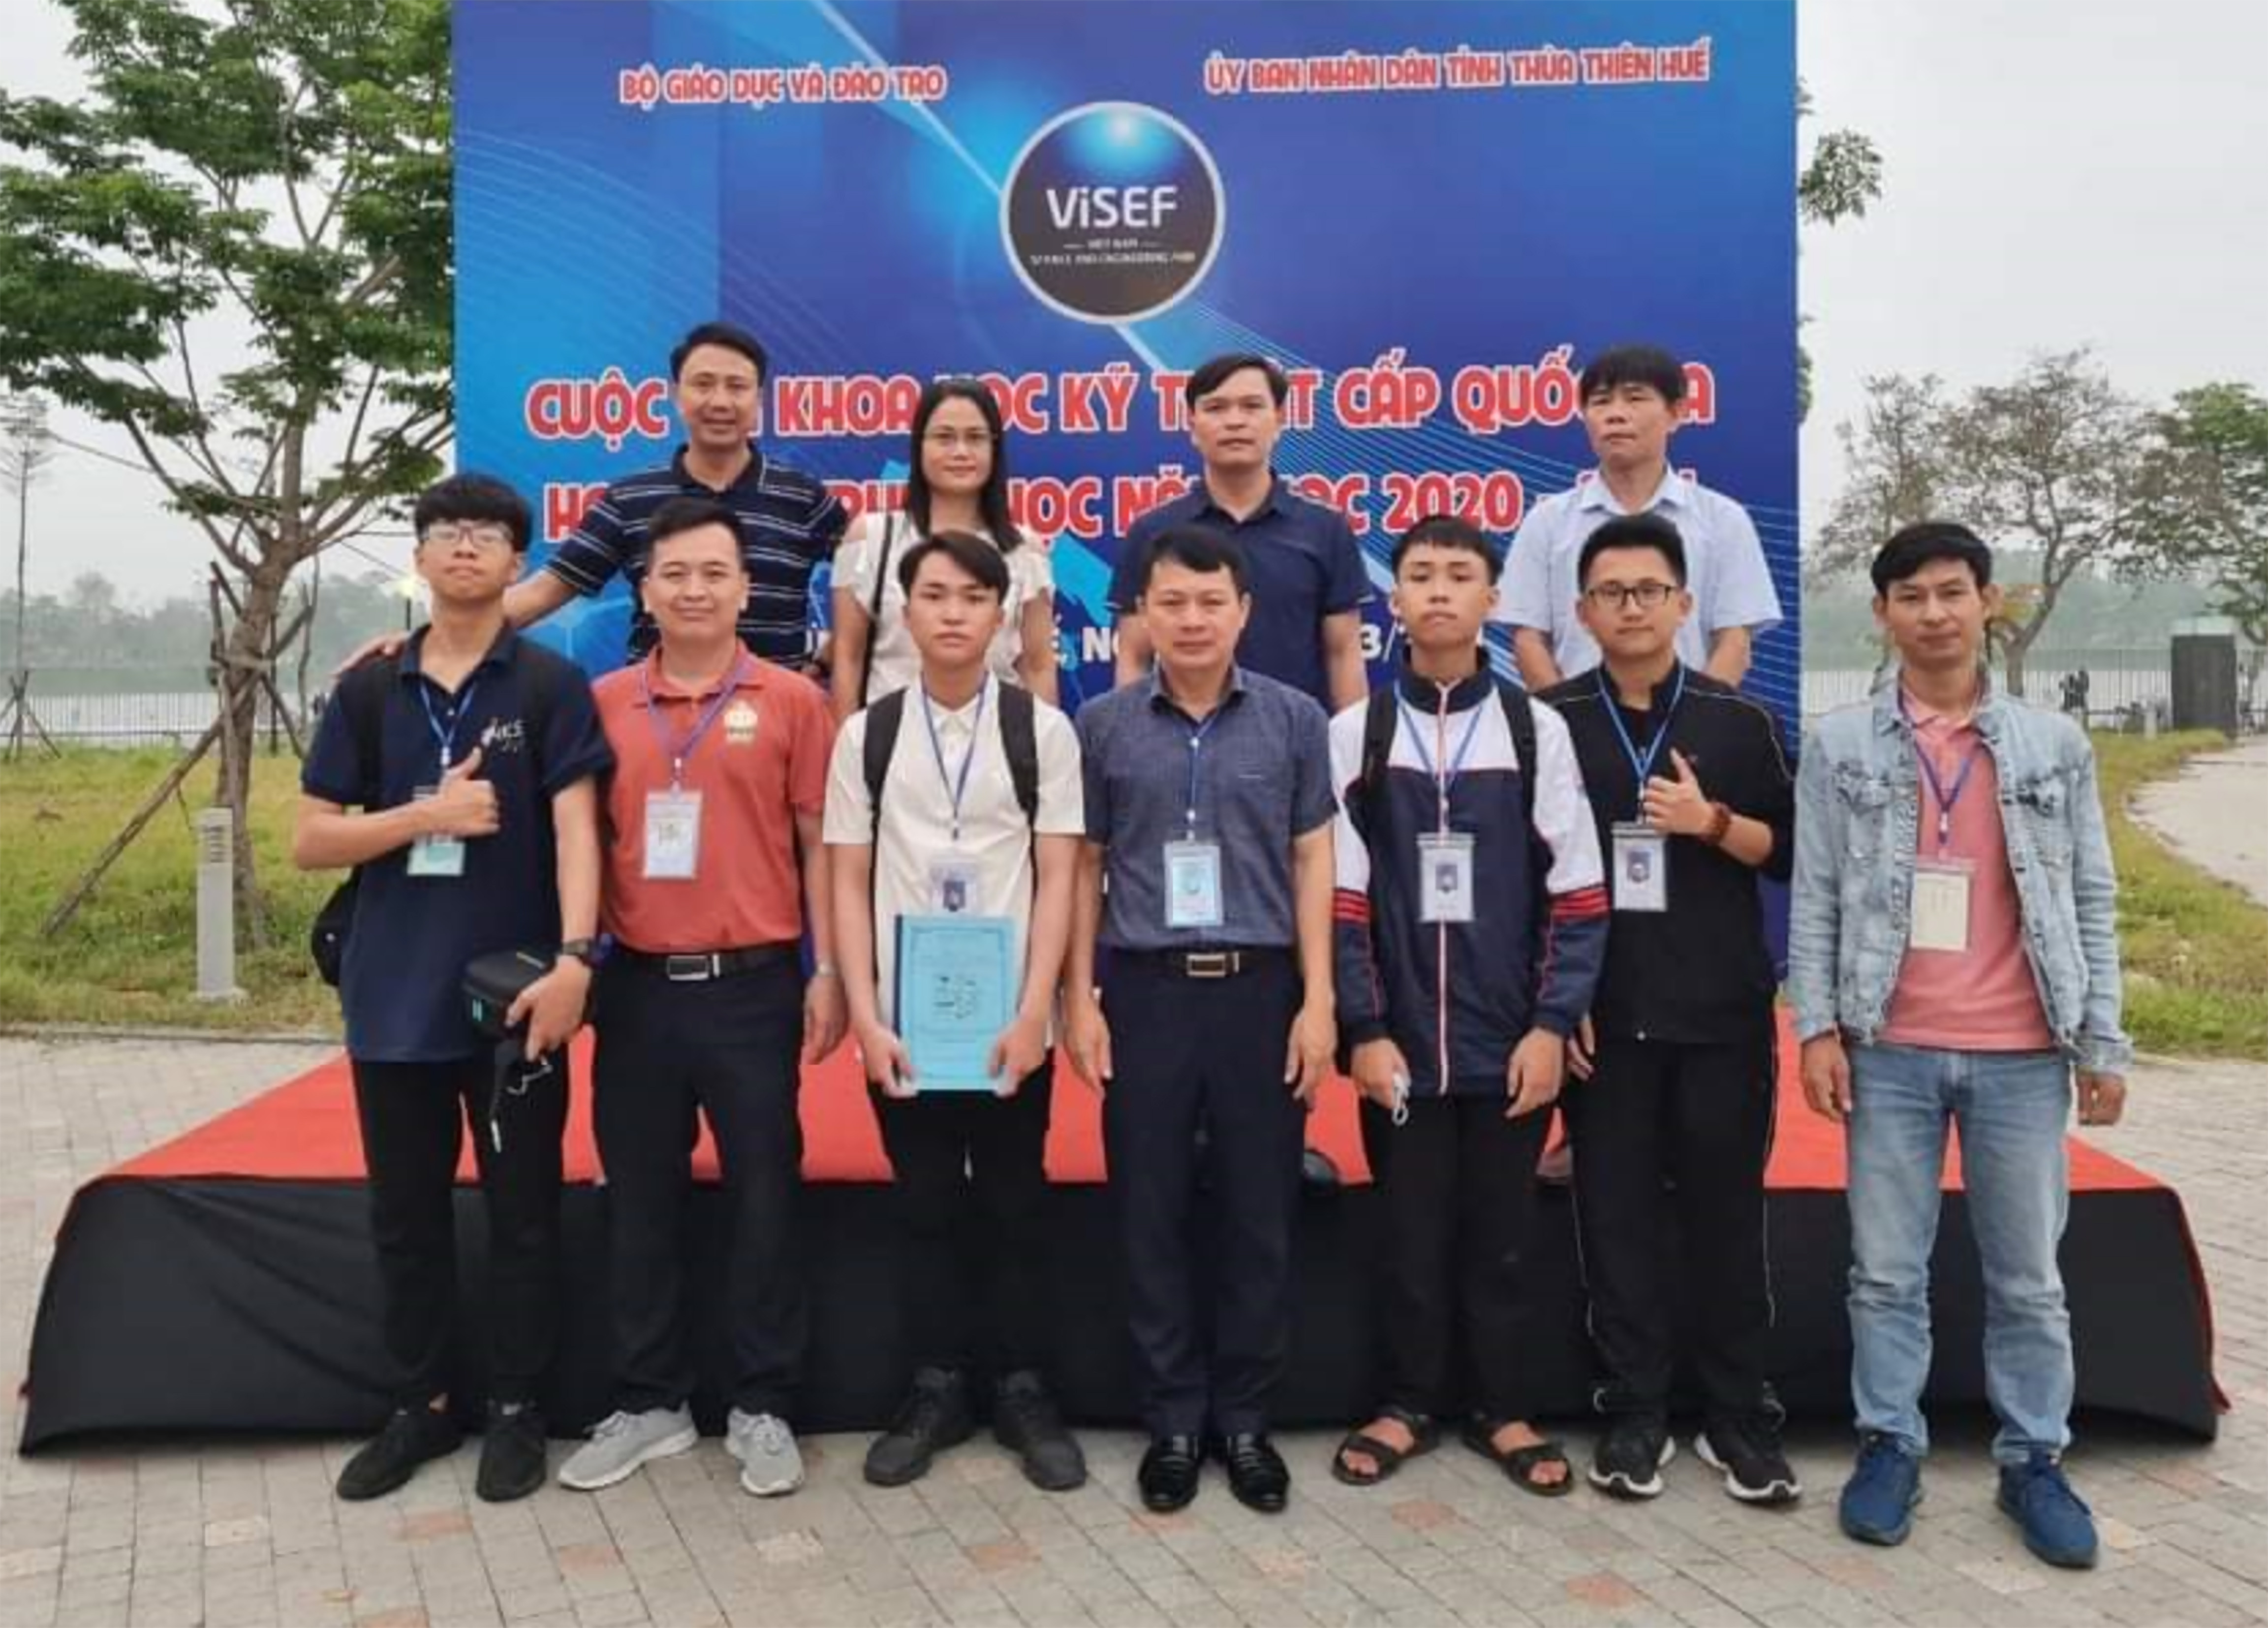 Đoàn giáo viên và học sinh Trường THPT chuyên Đại học Vinh tham dự cuộc thi Khoa học kỹ thuật dành cho học sinh trung học tại Huế. Ảnh: PV